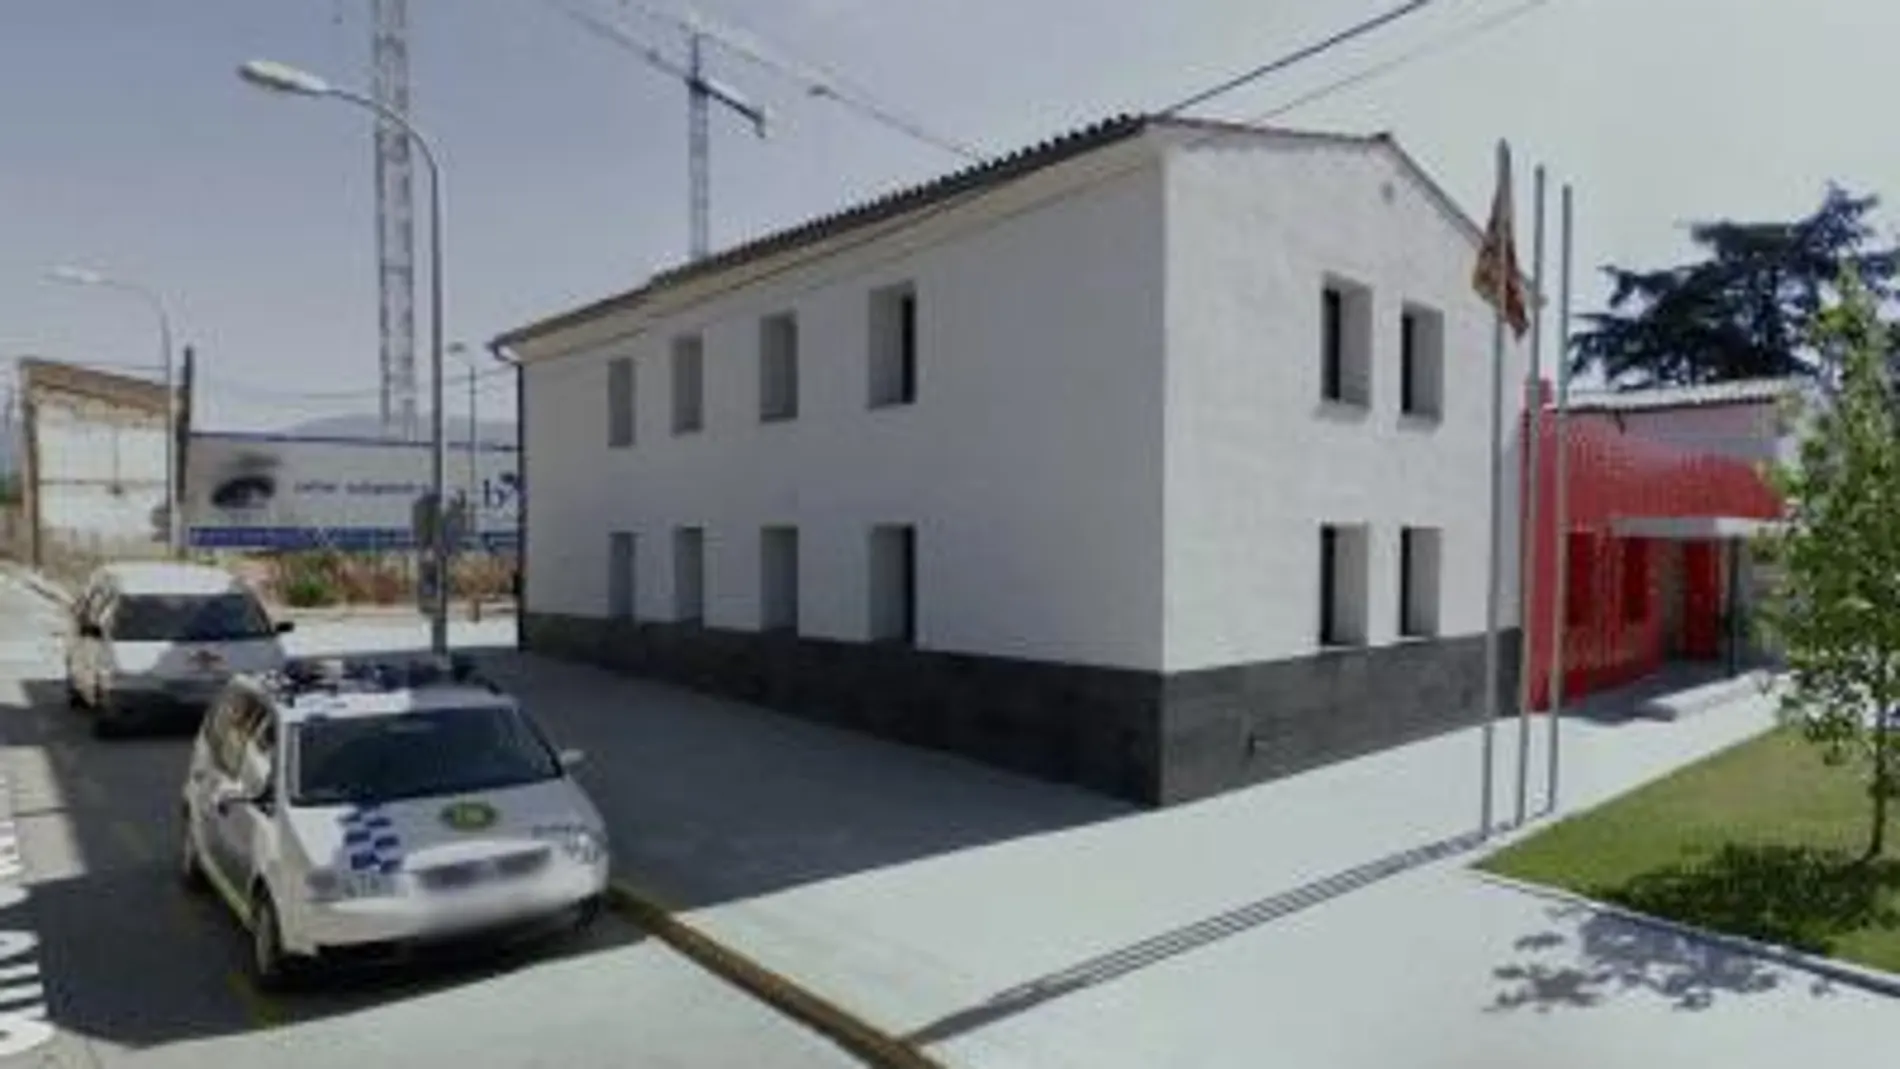 La comisaría de Llinars del Vallès